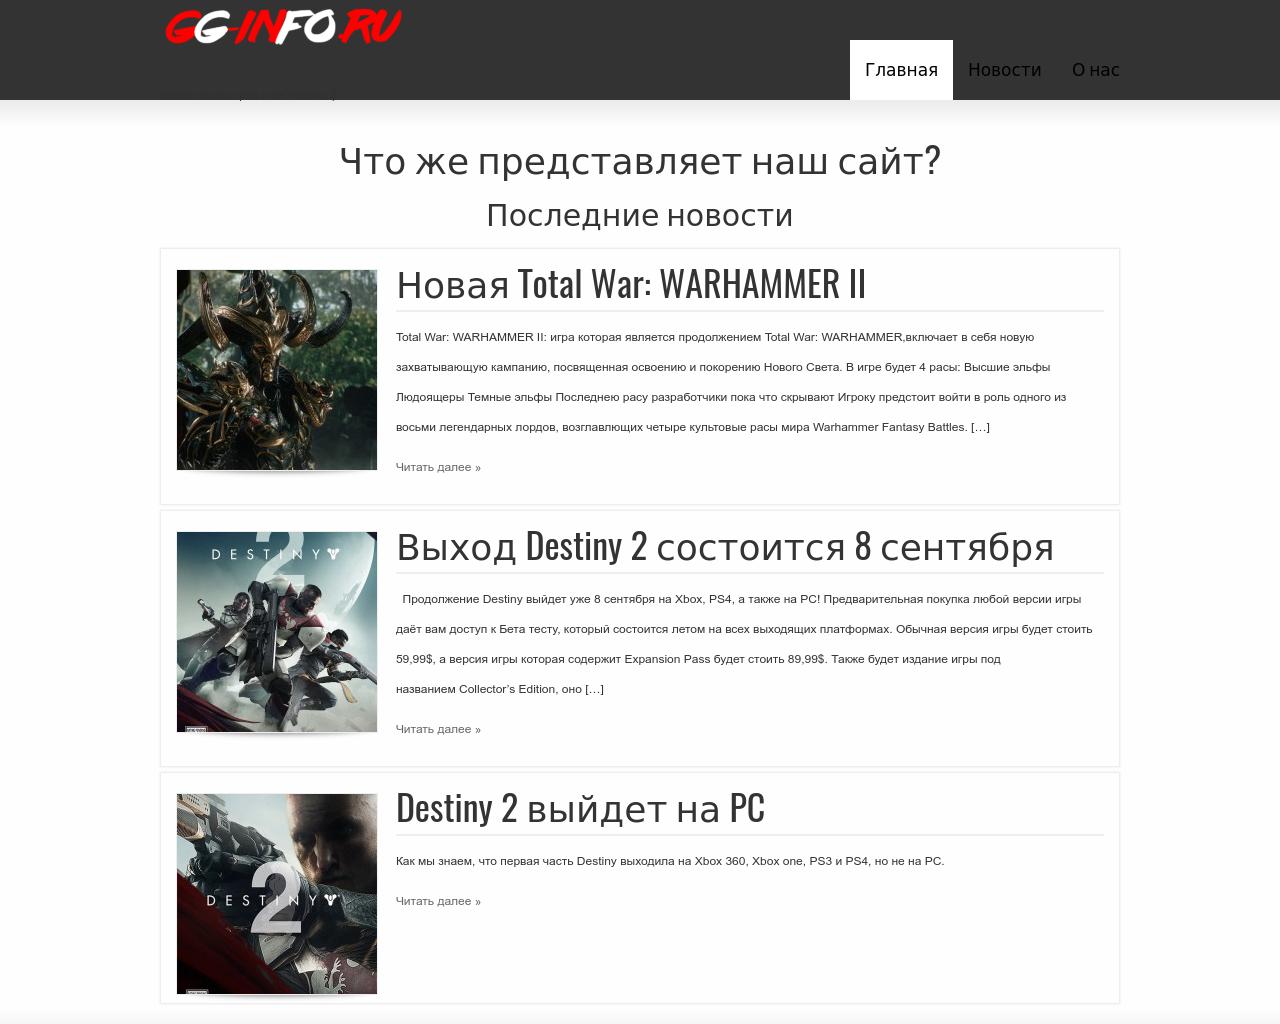 Изображение сайта gg-info.ru в разрешении 1280x1024